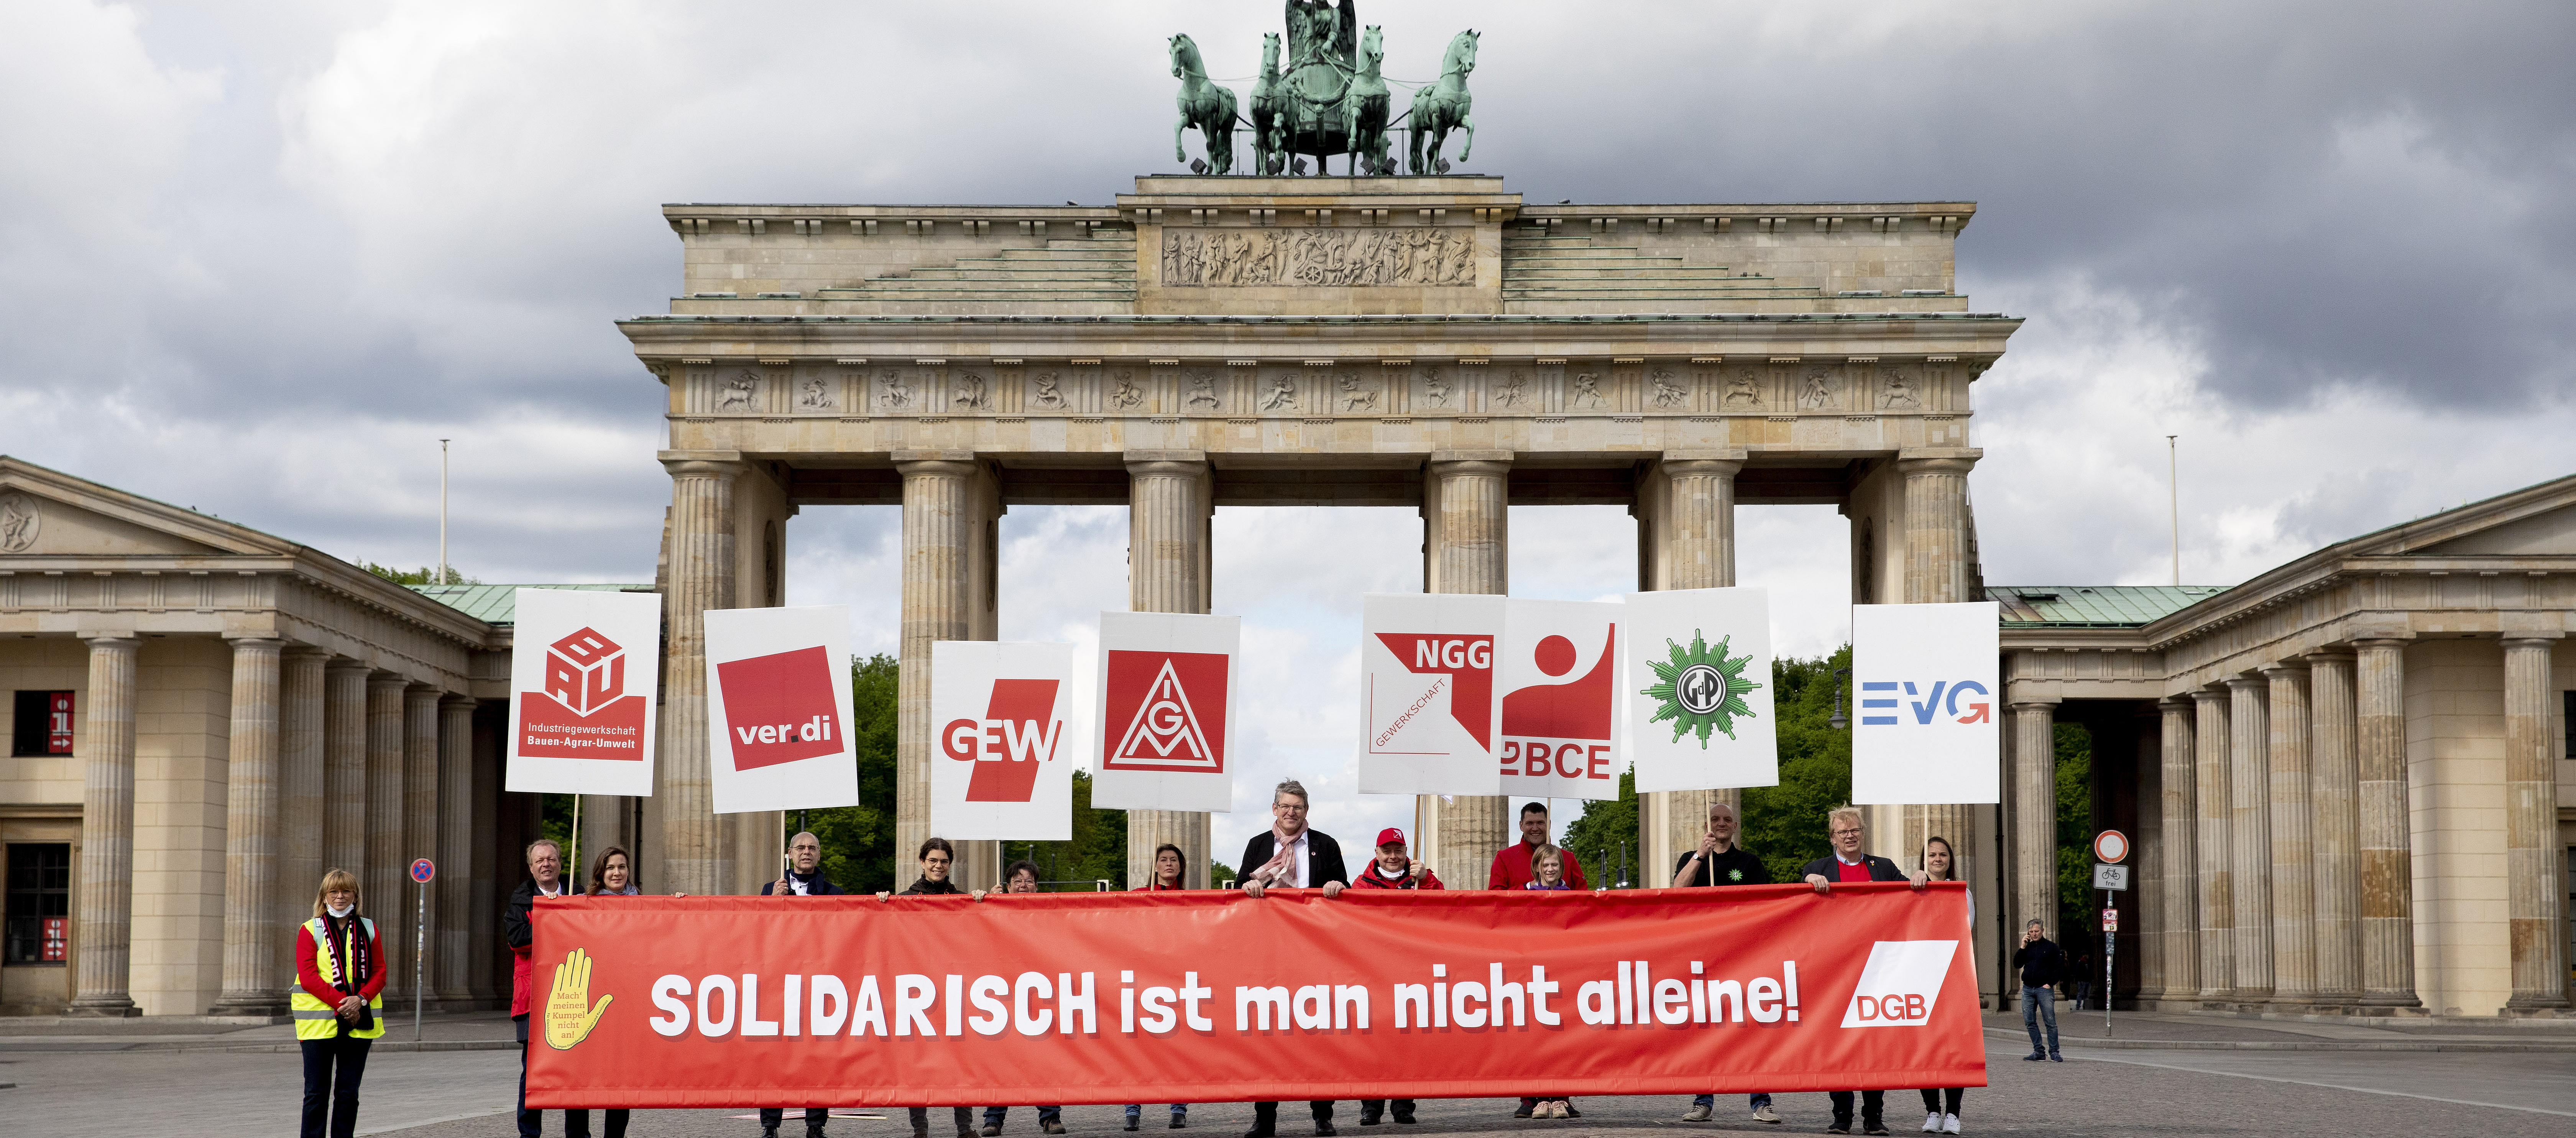 Foto mit Personen vor dem Brandenburger Tor. Zusammen halten Sie ein Transparent mit dem Schriftzug "Solidarisch ist man nicht alleine". Jede Person hält noch jeweils ein Plakat mit Gewerkschaftslogos.